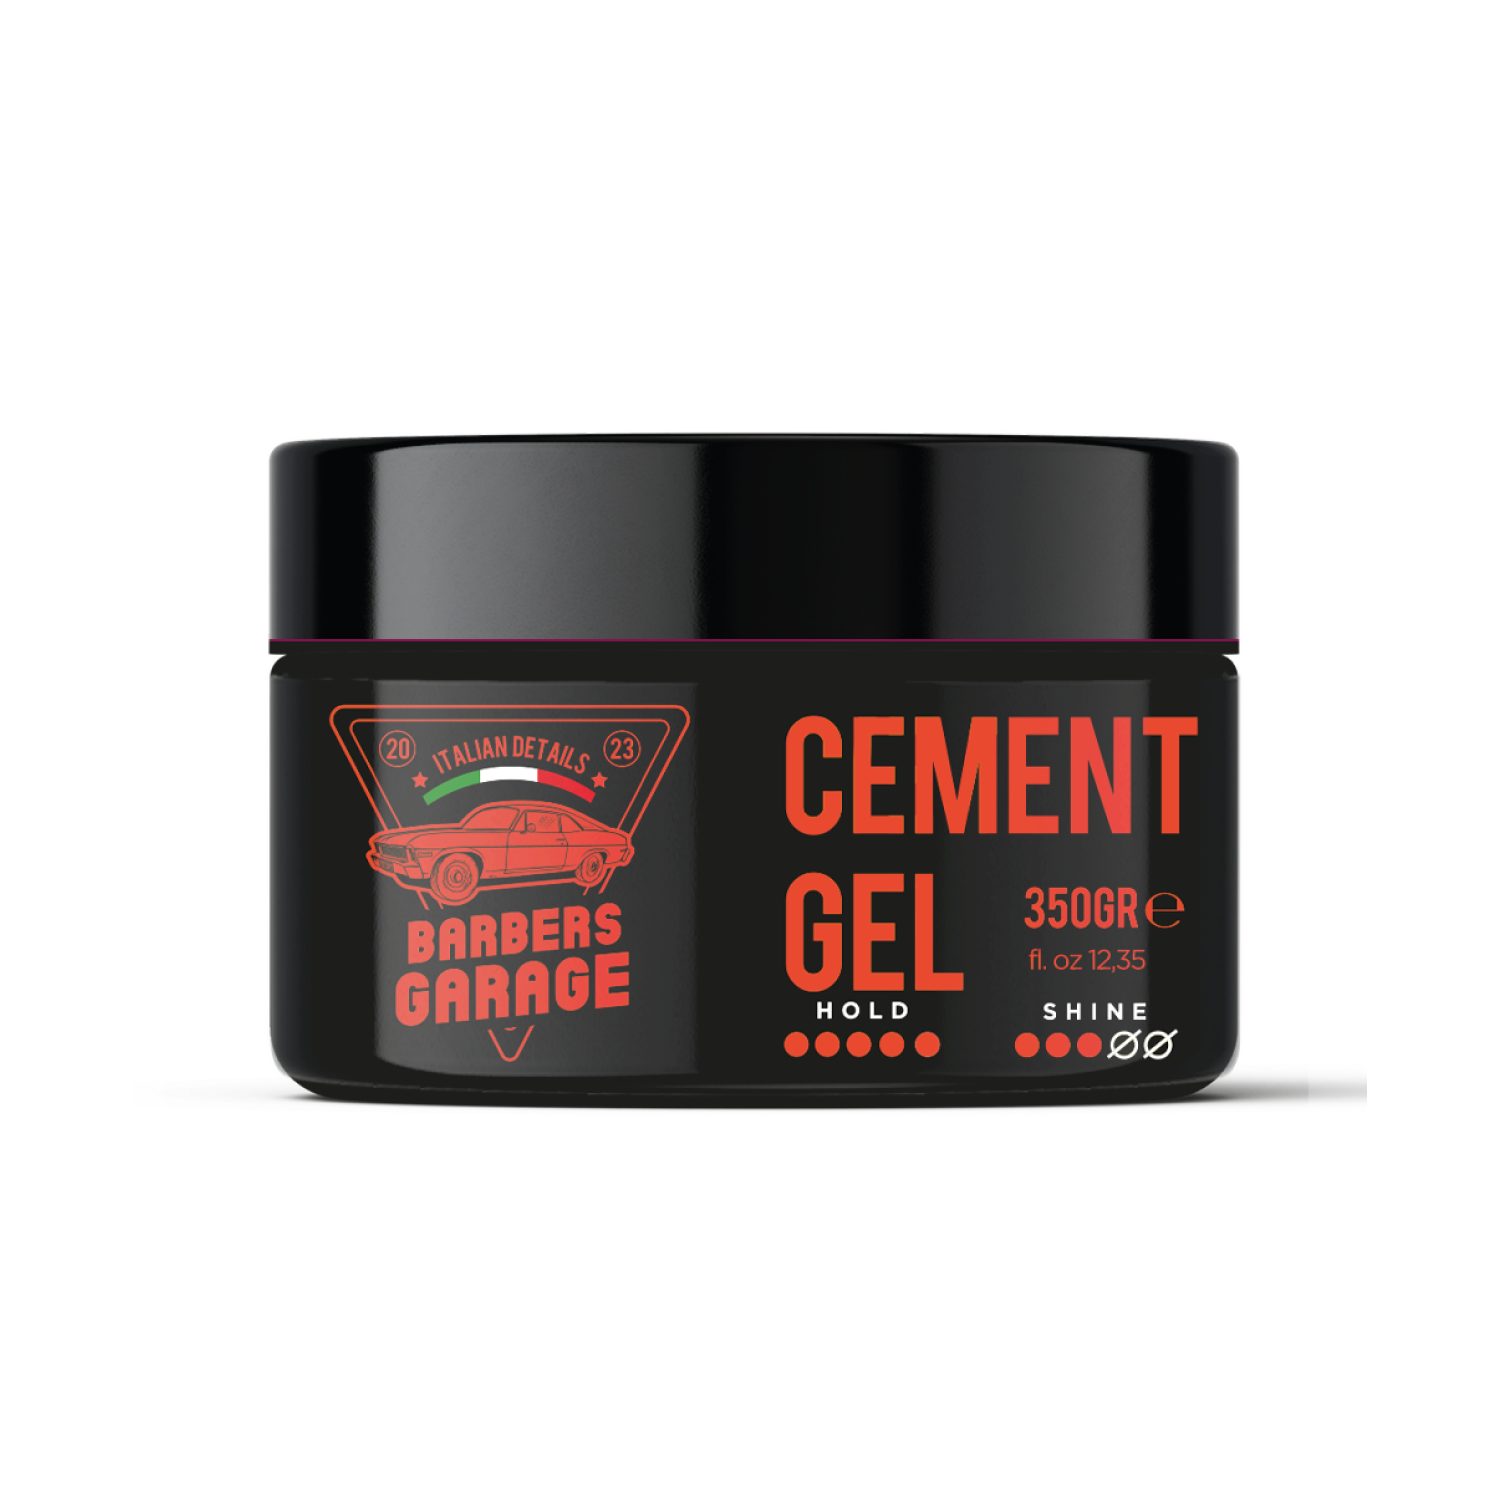 Veana Haargel Barbers Garage Cement Gel (350g)